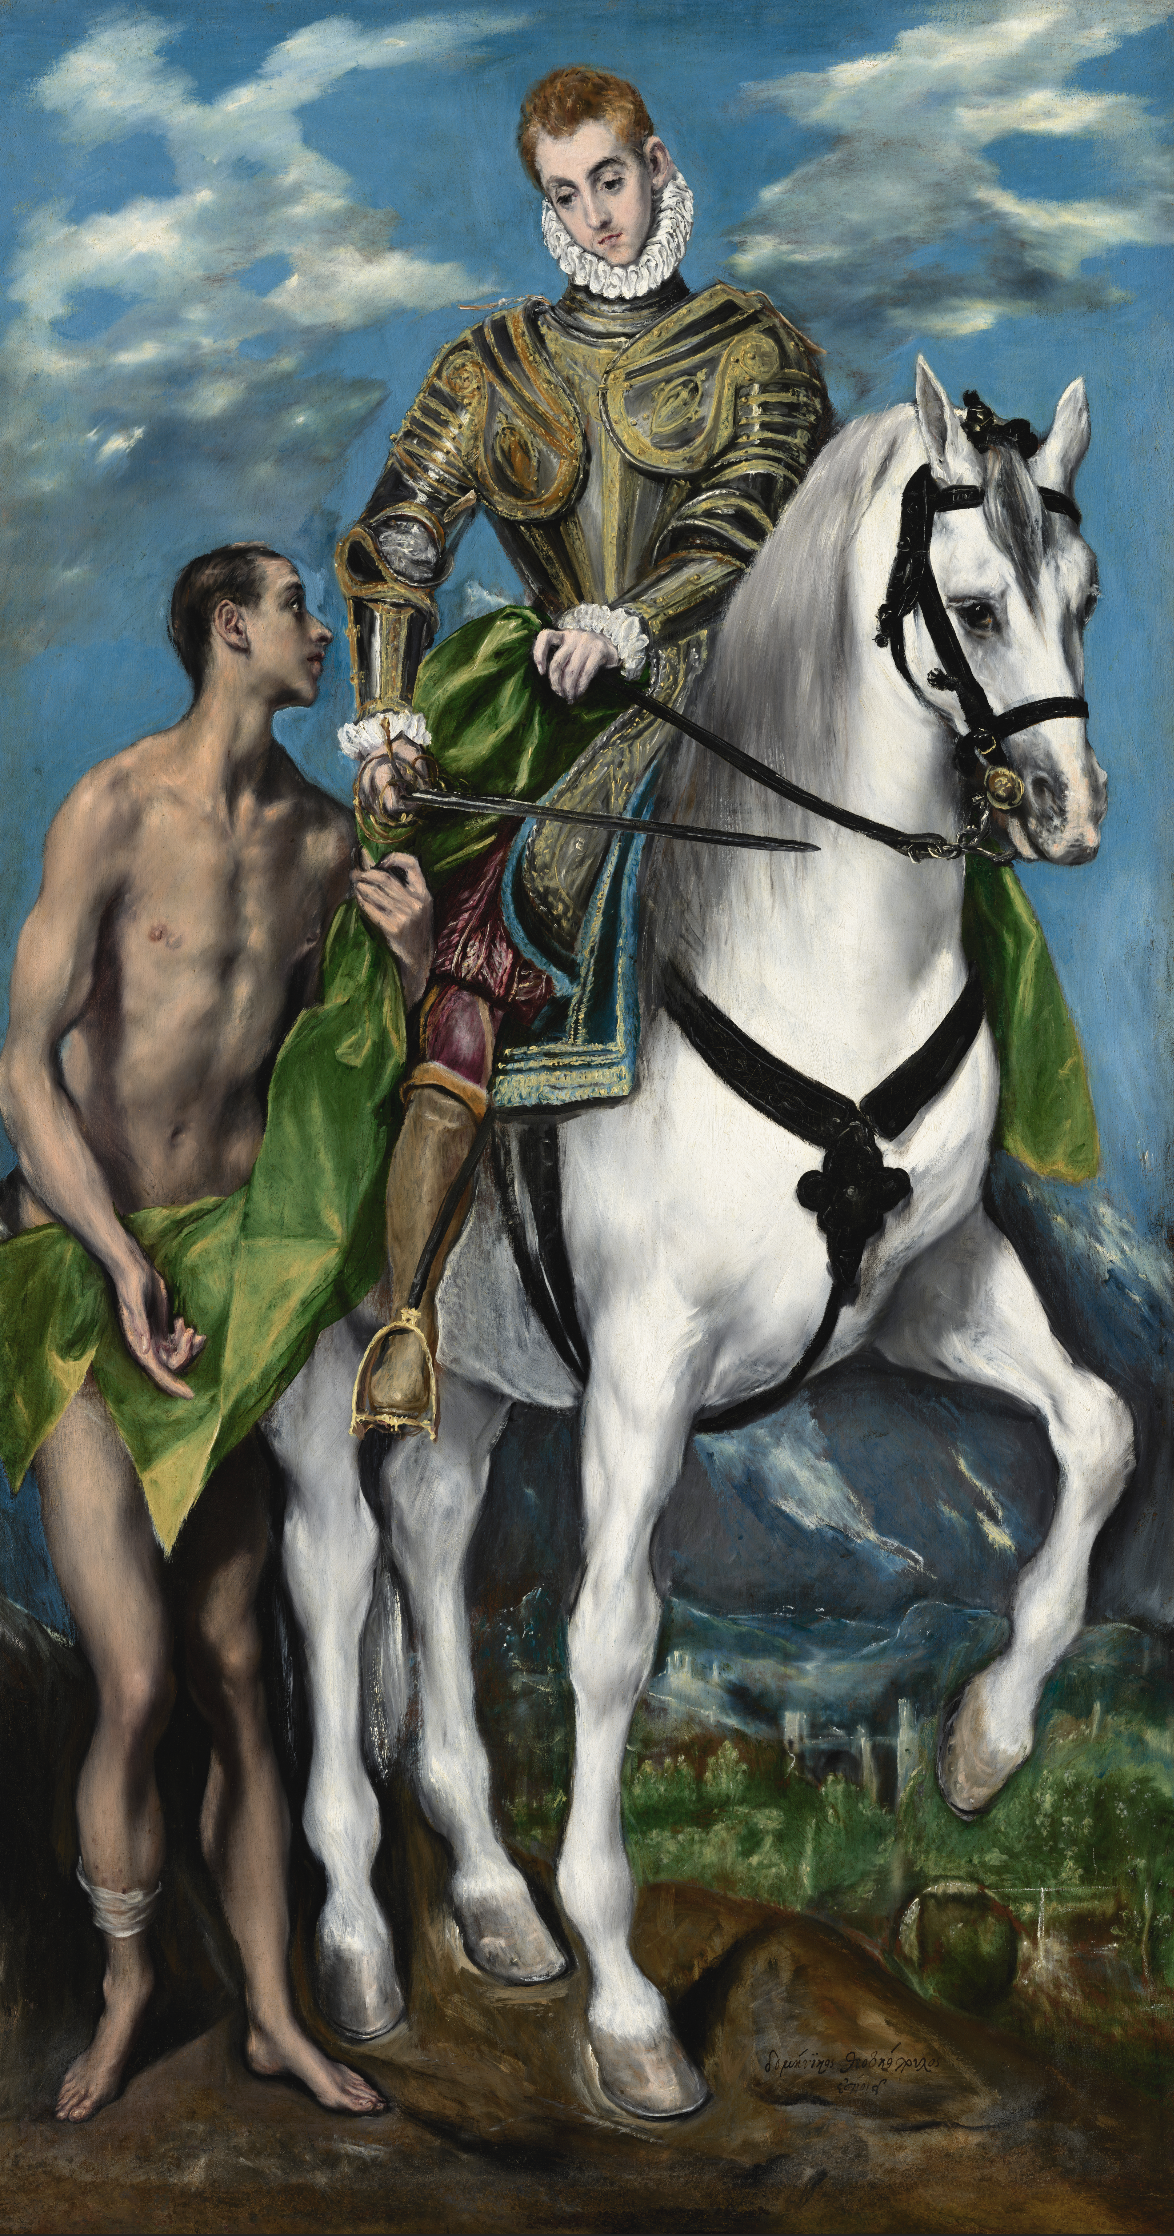 El Greco, San Martino e il mendicante, Olio su tela, 137 x 172 cm, National Gallery of Art Washington ©Courtesy National Gallery of Art, Washington